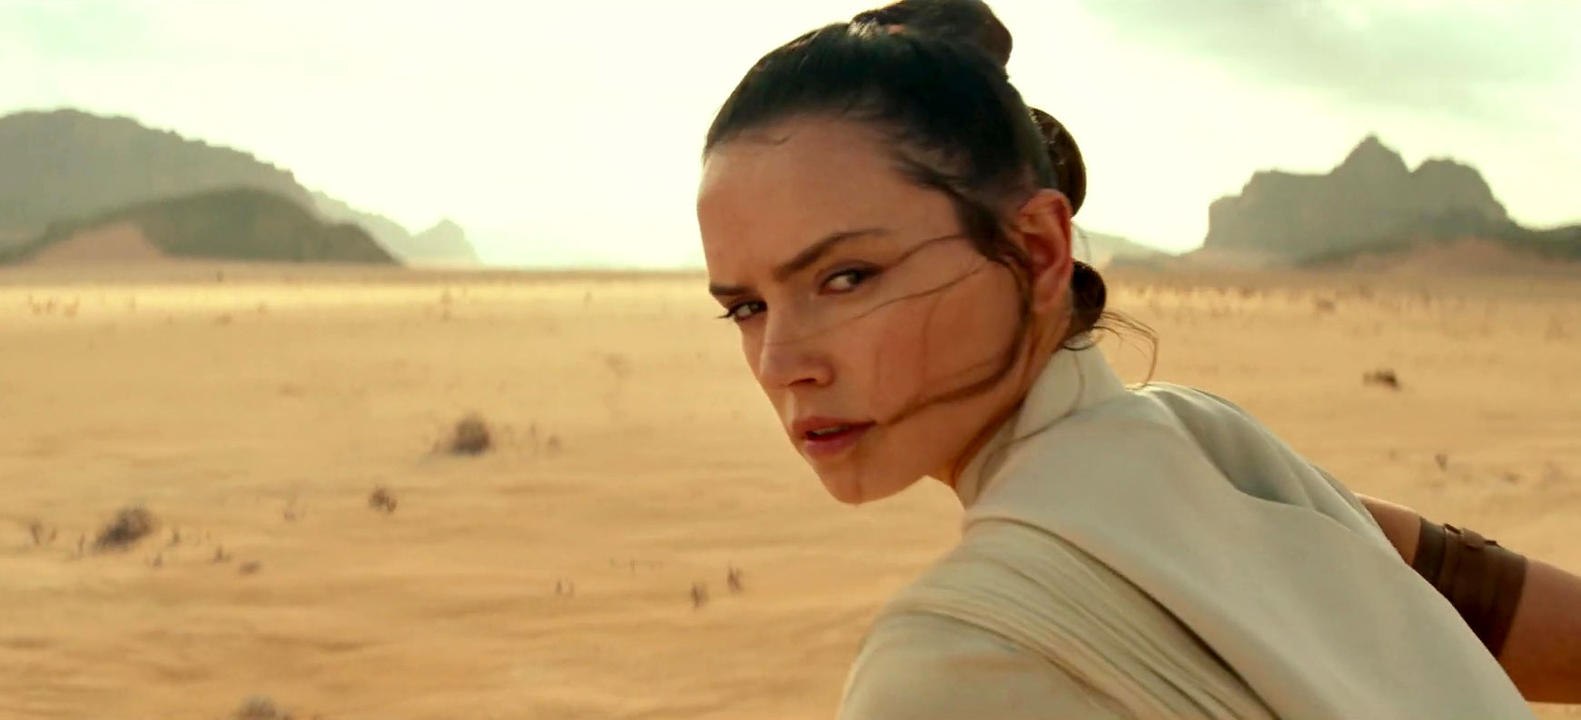 Star Wars 9 - Der Aufstieg Skywalkers: Teaser-Trailer (Deutsch) HD